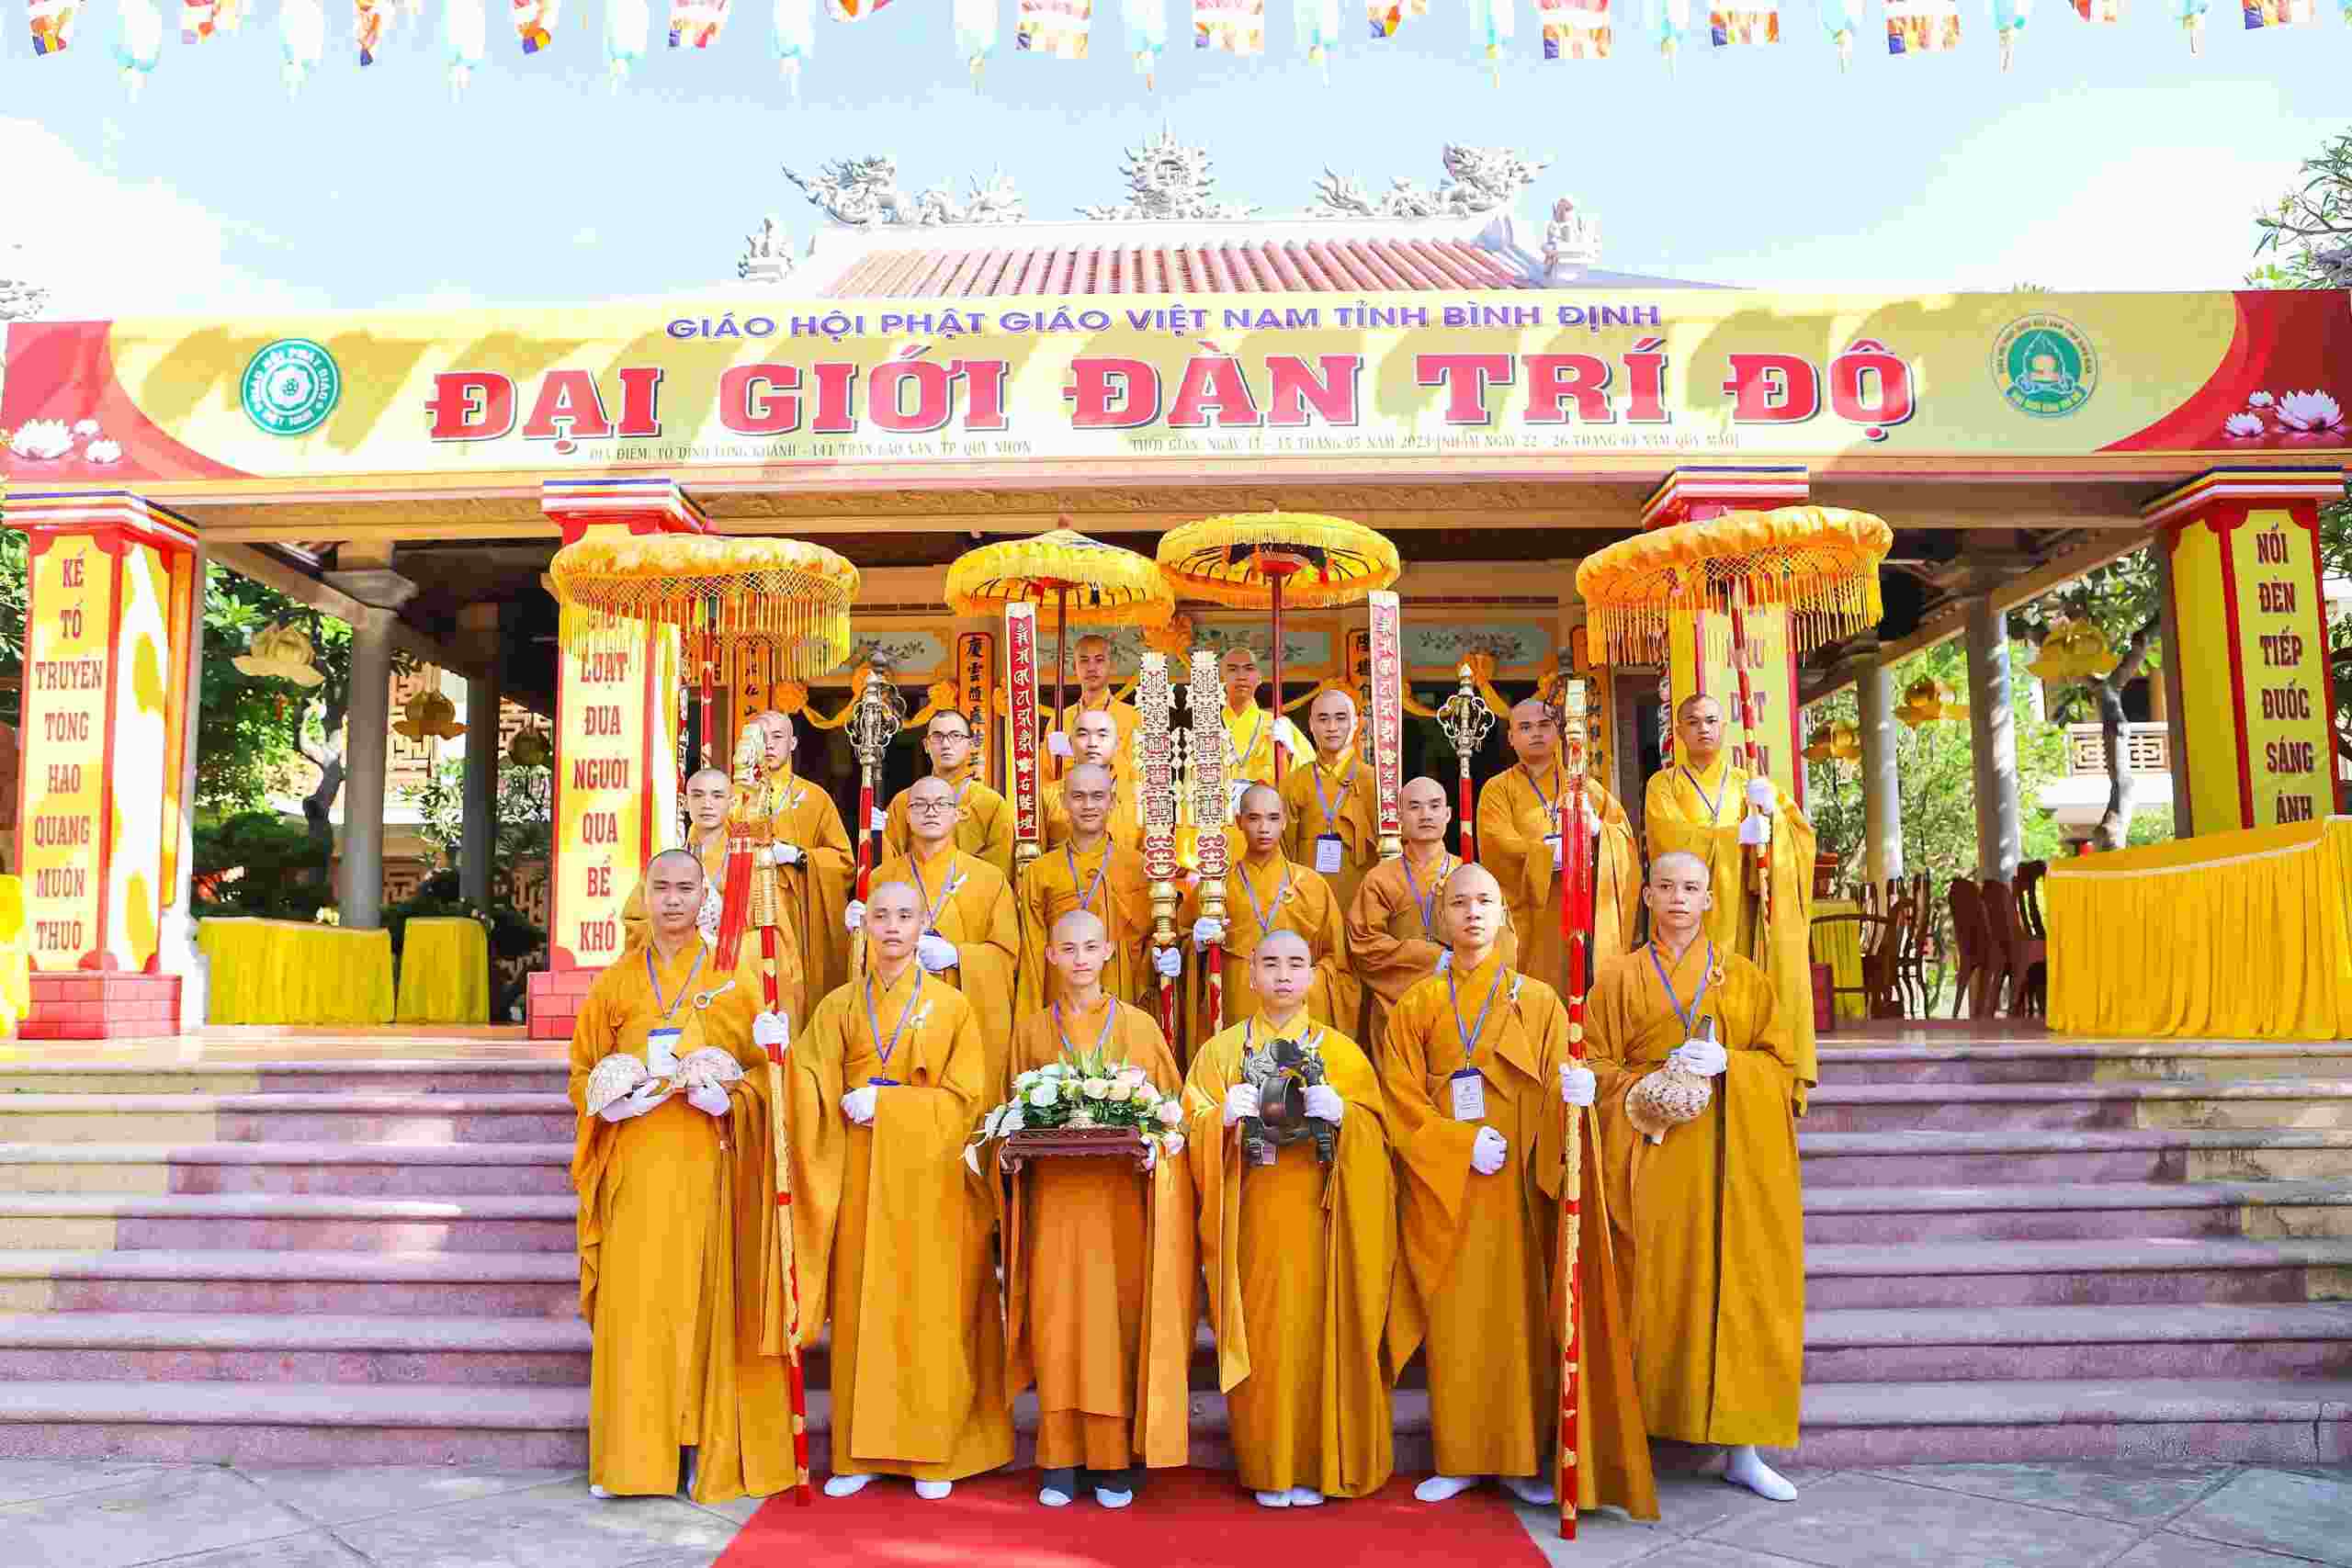 Ân đàn na, tín thí trong Đại Giới Đàn Trí Độ Pl.2567 tại chùa Tâm Ấn